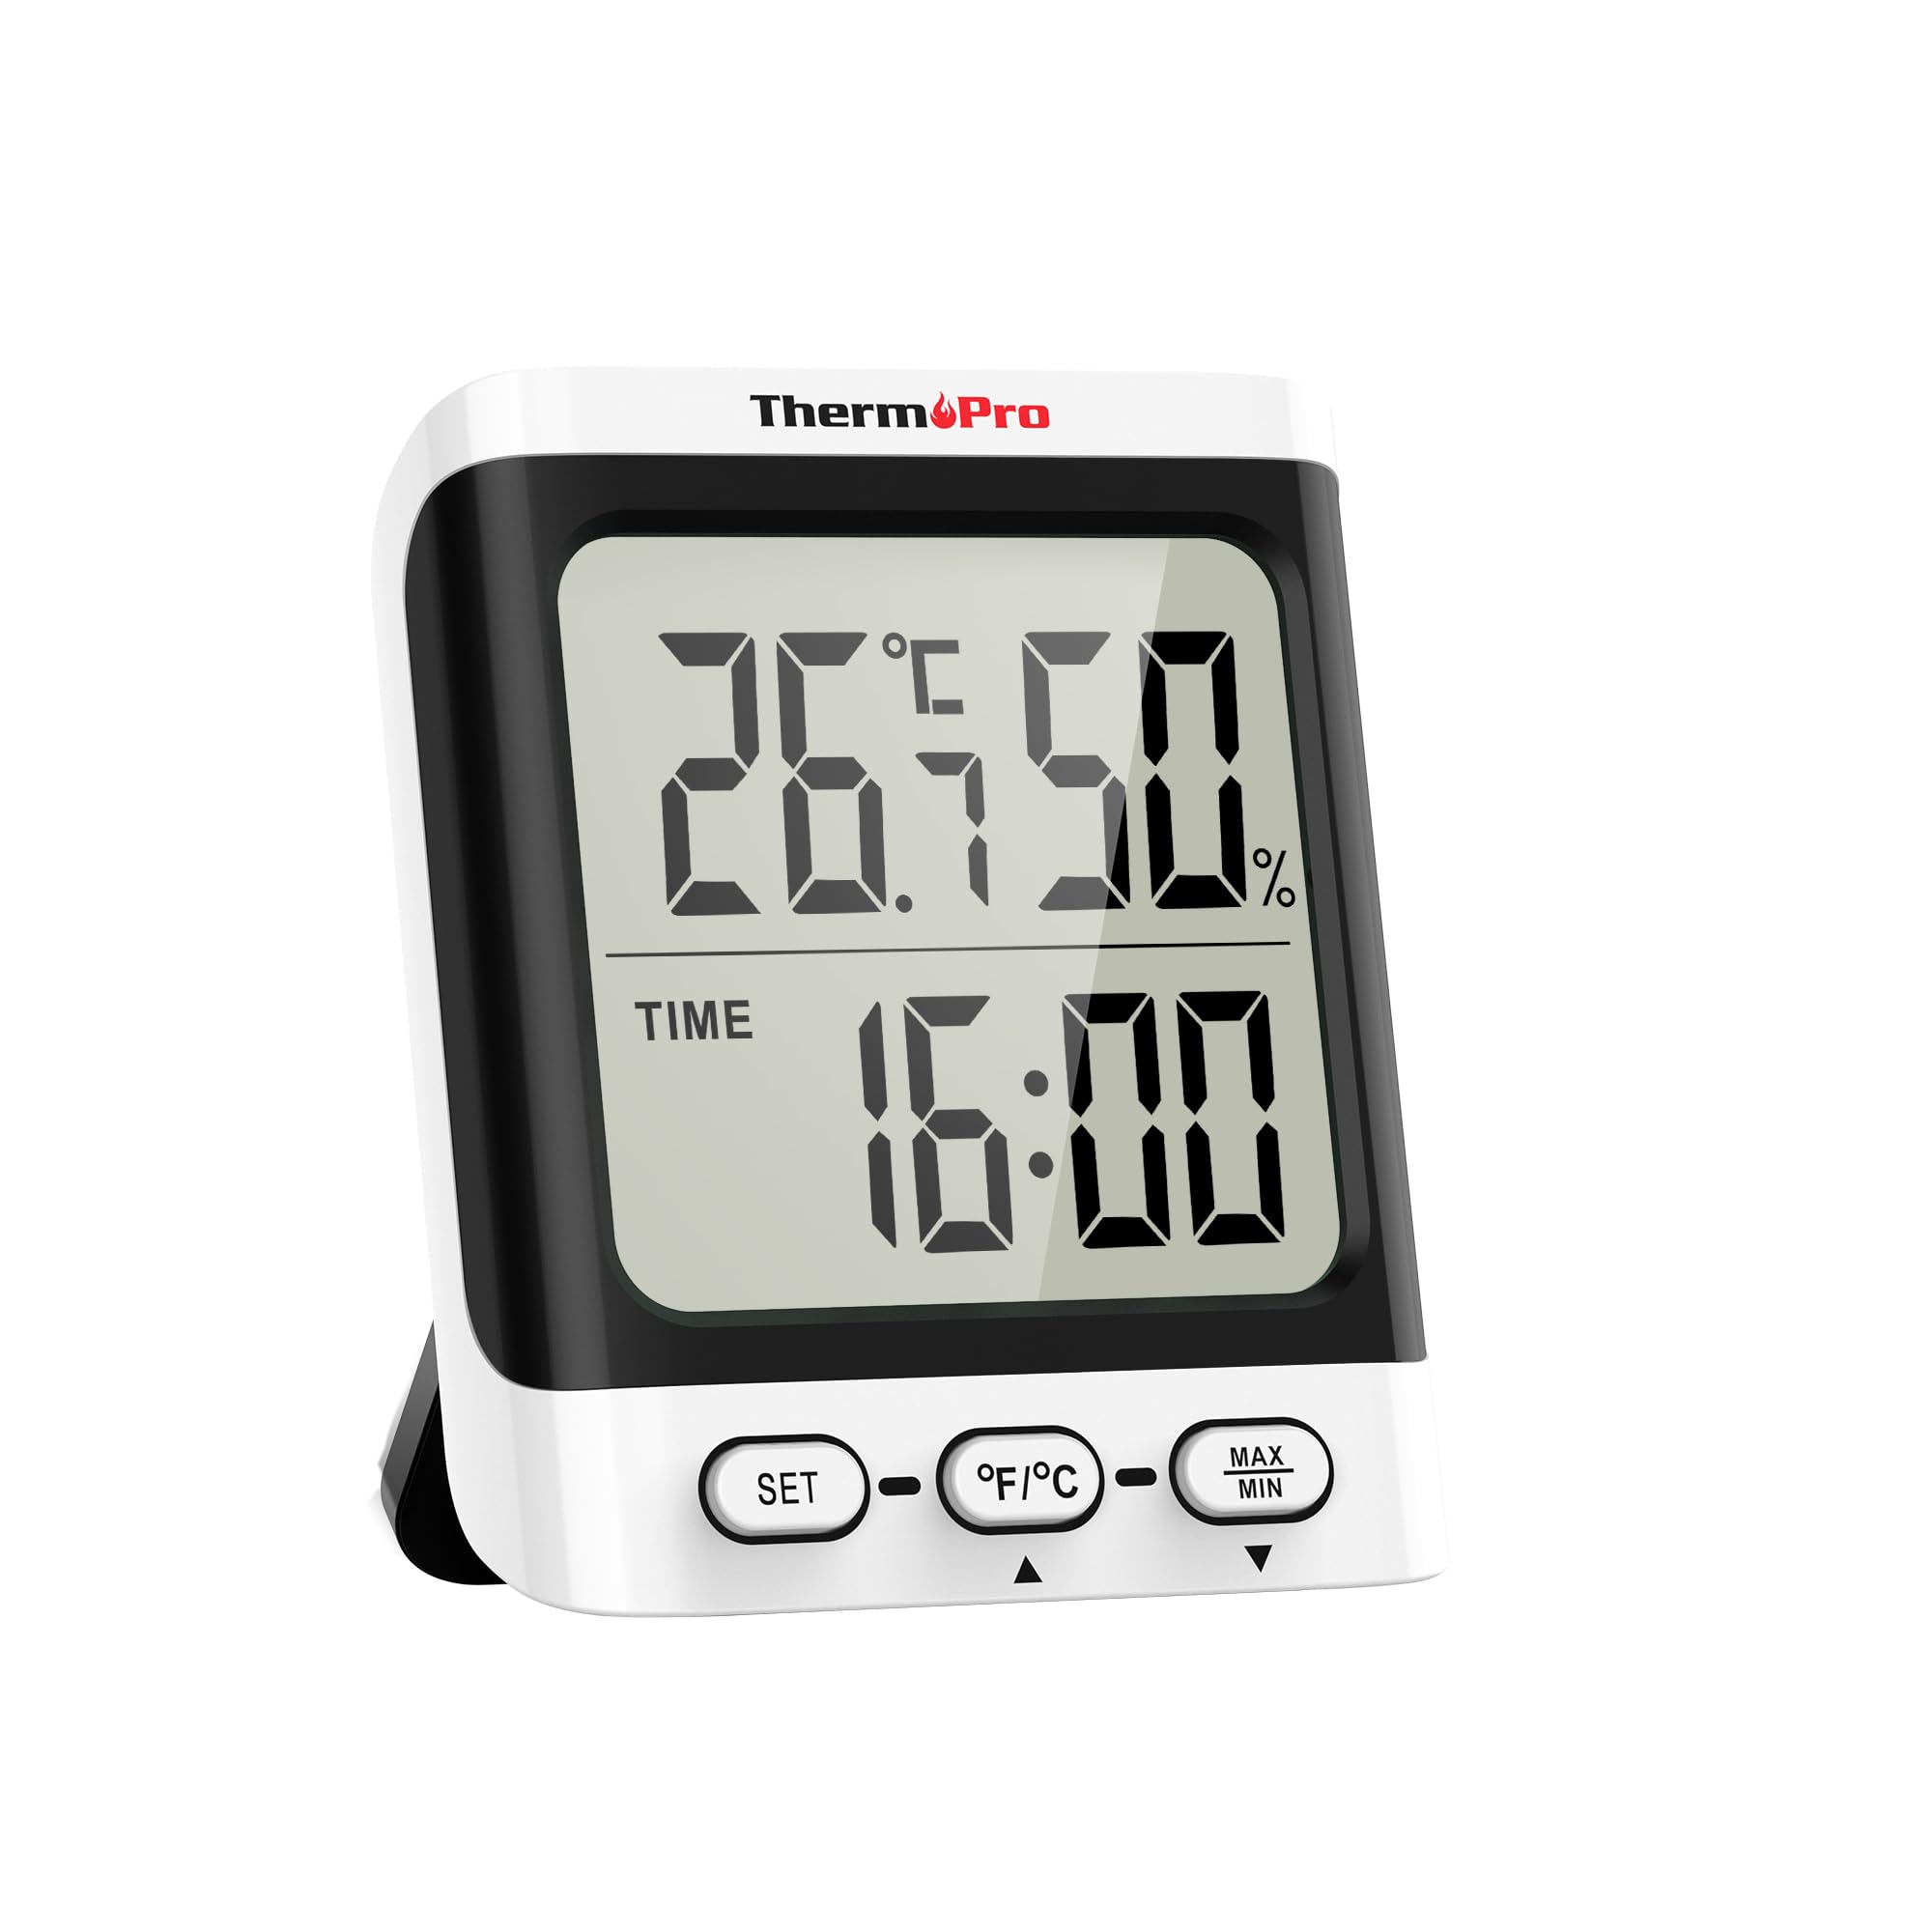 boutique en ligne ThermoPro TP152 Hygromètre Thermometre Interieur, Thermomètre Numérique de Bureau avec Moniteur de Température et Humidité, Thermomètre Chambre Bébé à Jauge de Humidité Précise avec Horloge rq7SvBDD7 boutique en ligne